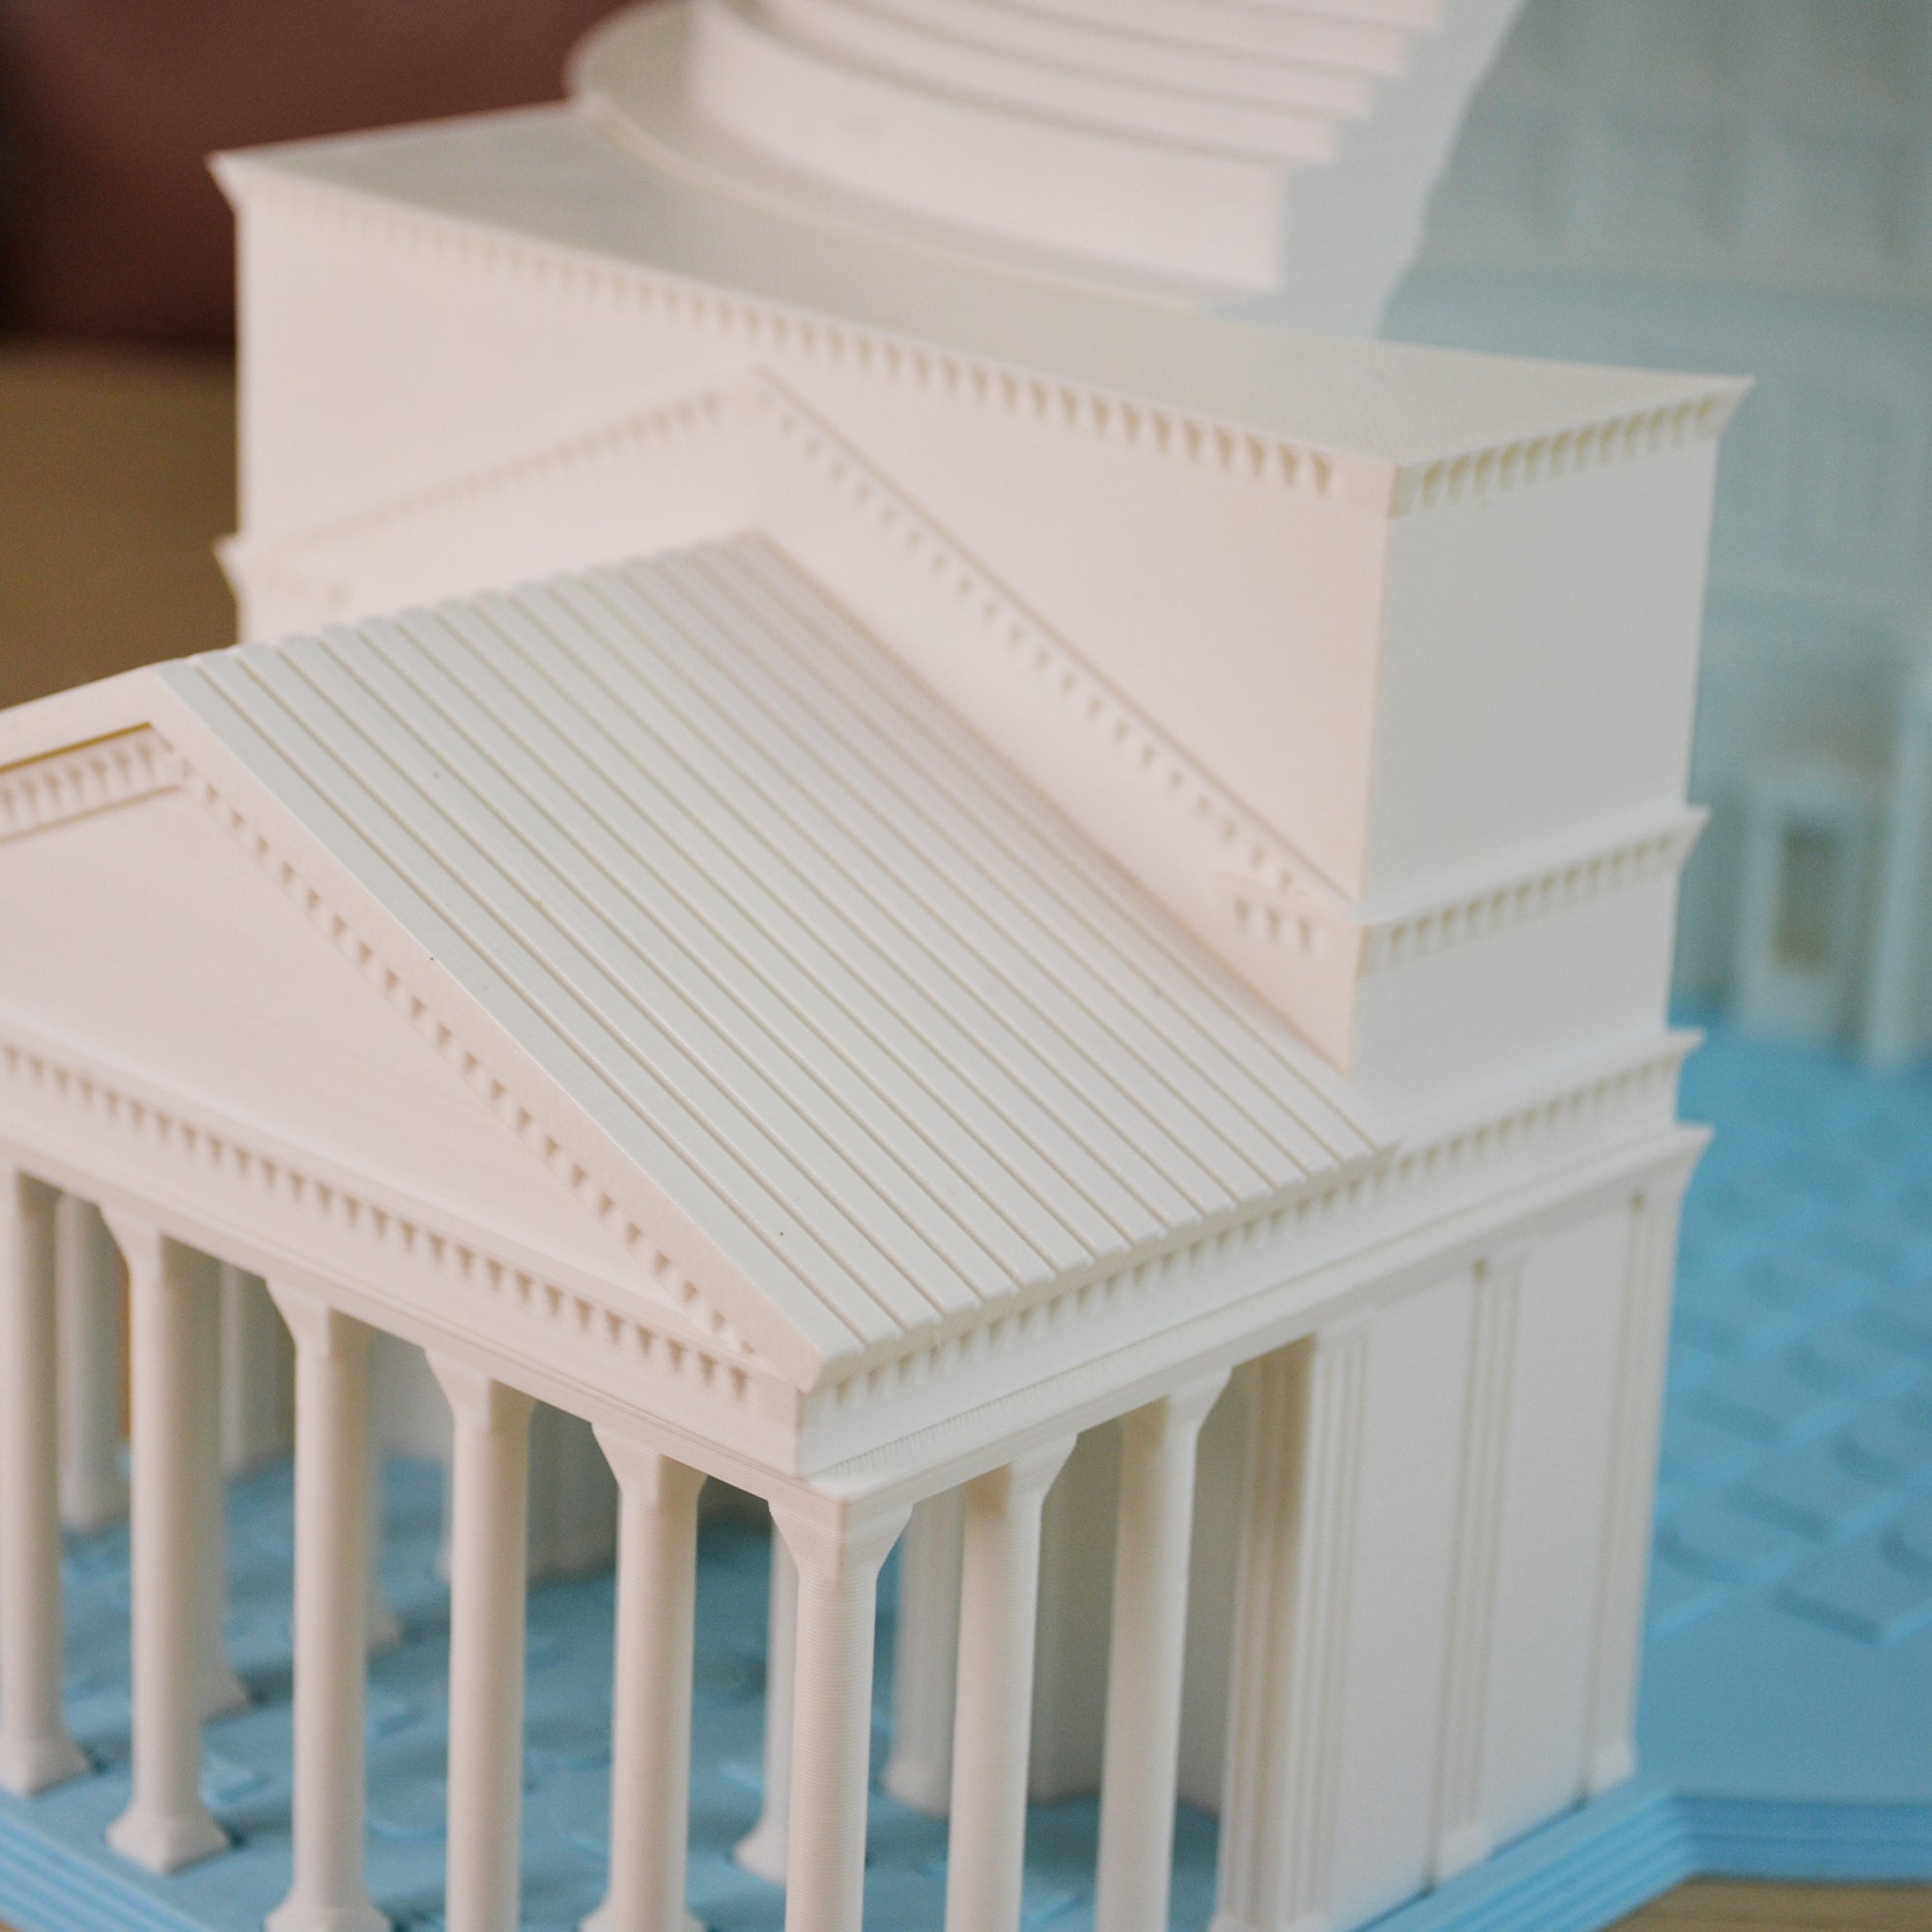 Modelo 3D del Panteón: Experiencia inmersiva en arquitectura y diseño